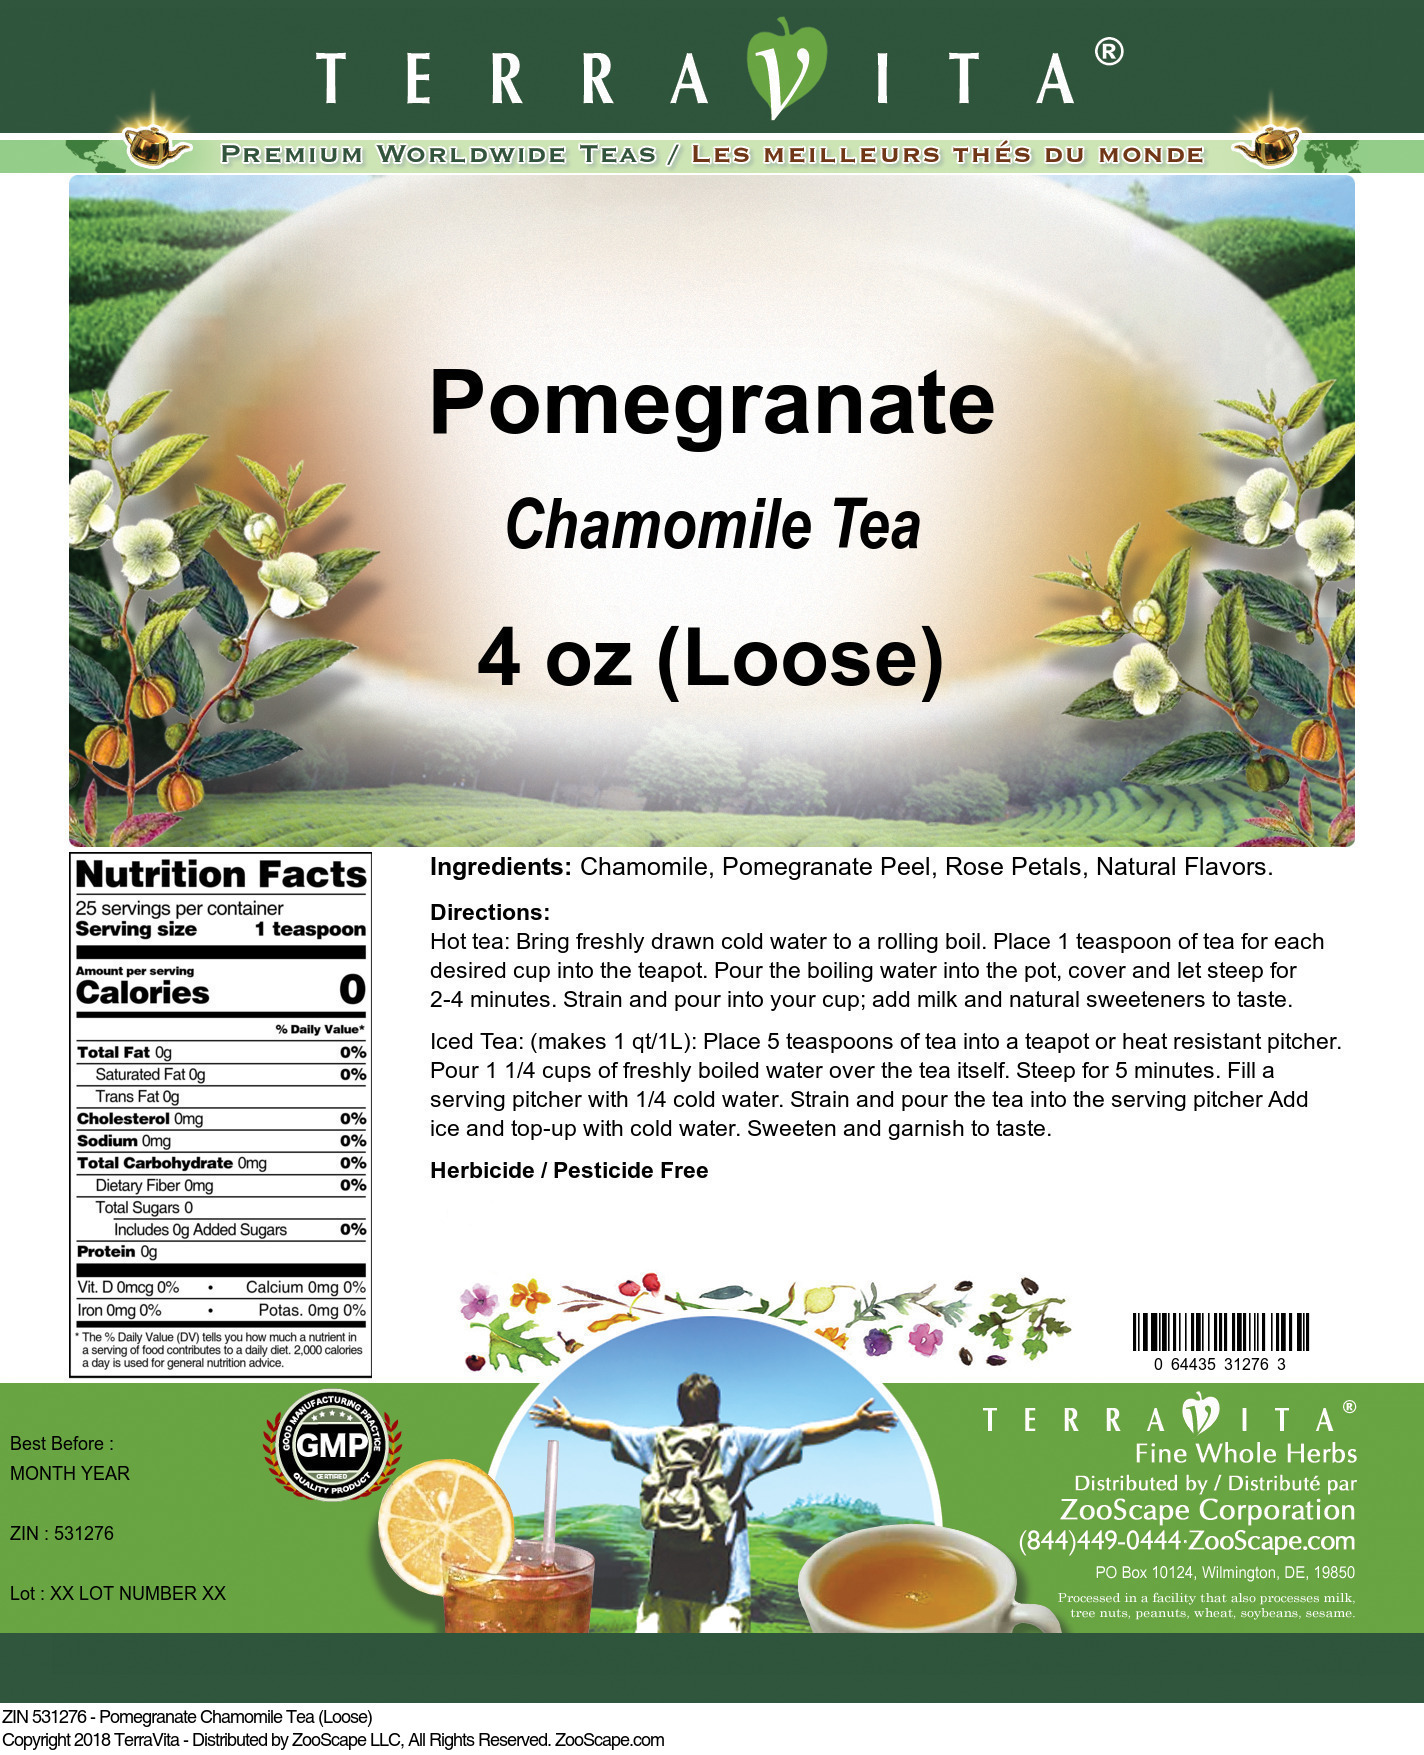 Pomegranate Chamomile Tea (Loose) - Label